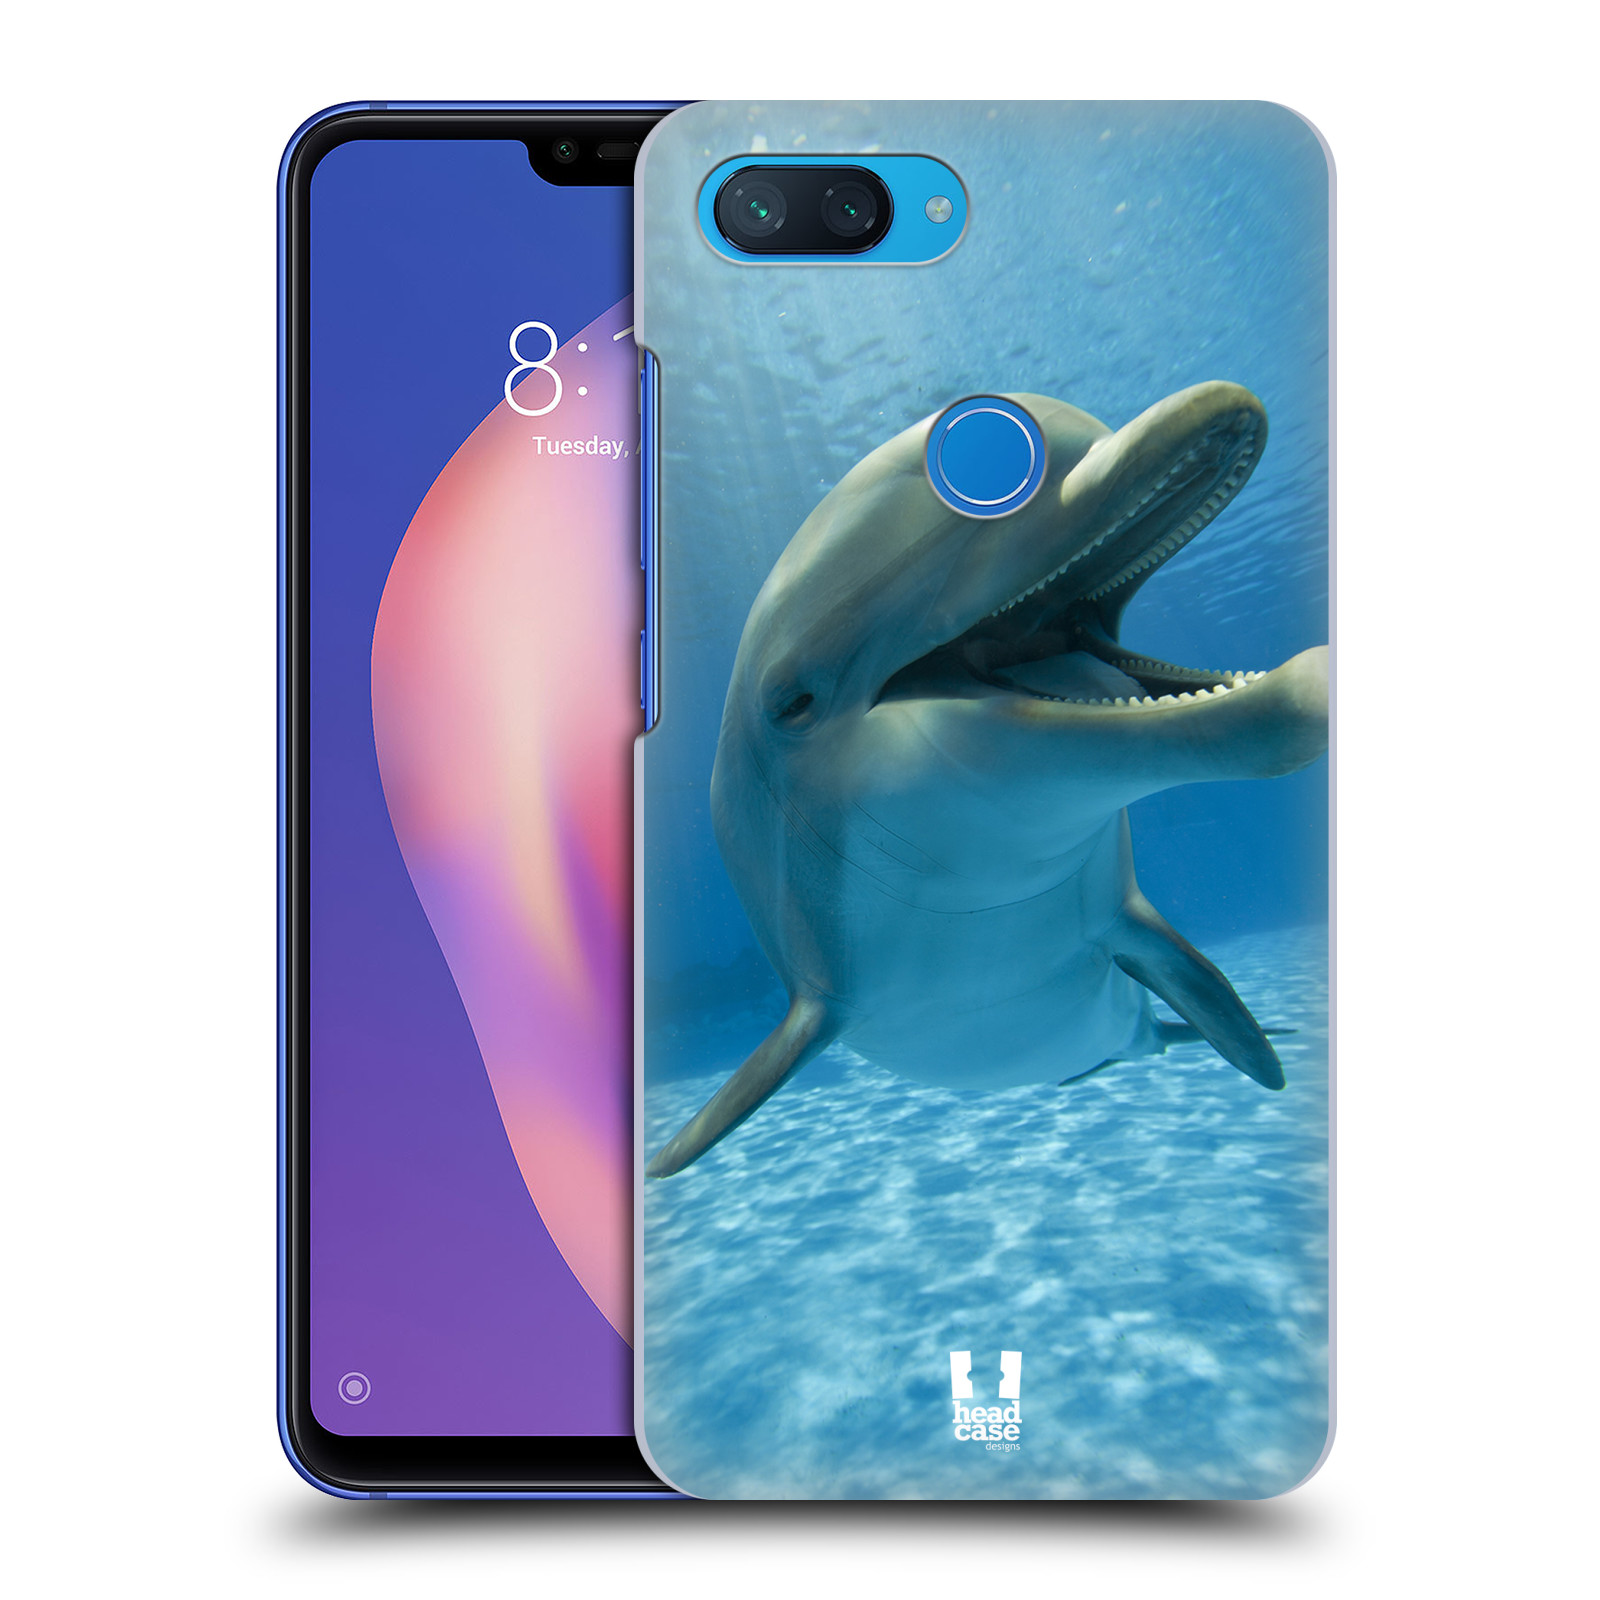 Zadní obal pro mobil Xiaomi Mi 8 LITE - HEAD CASE - Svět zvířat delfín v moři